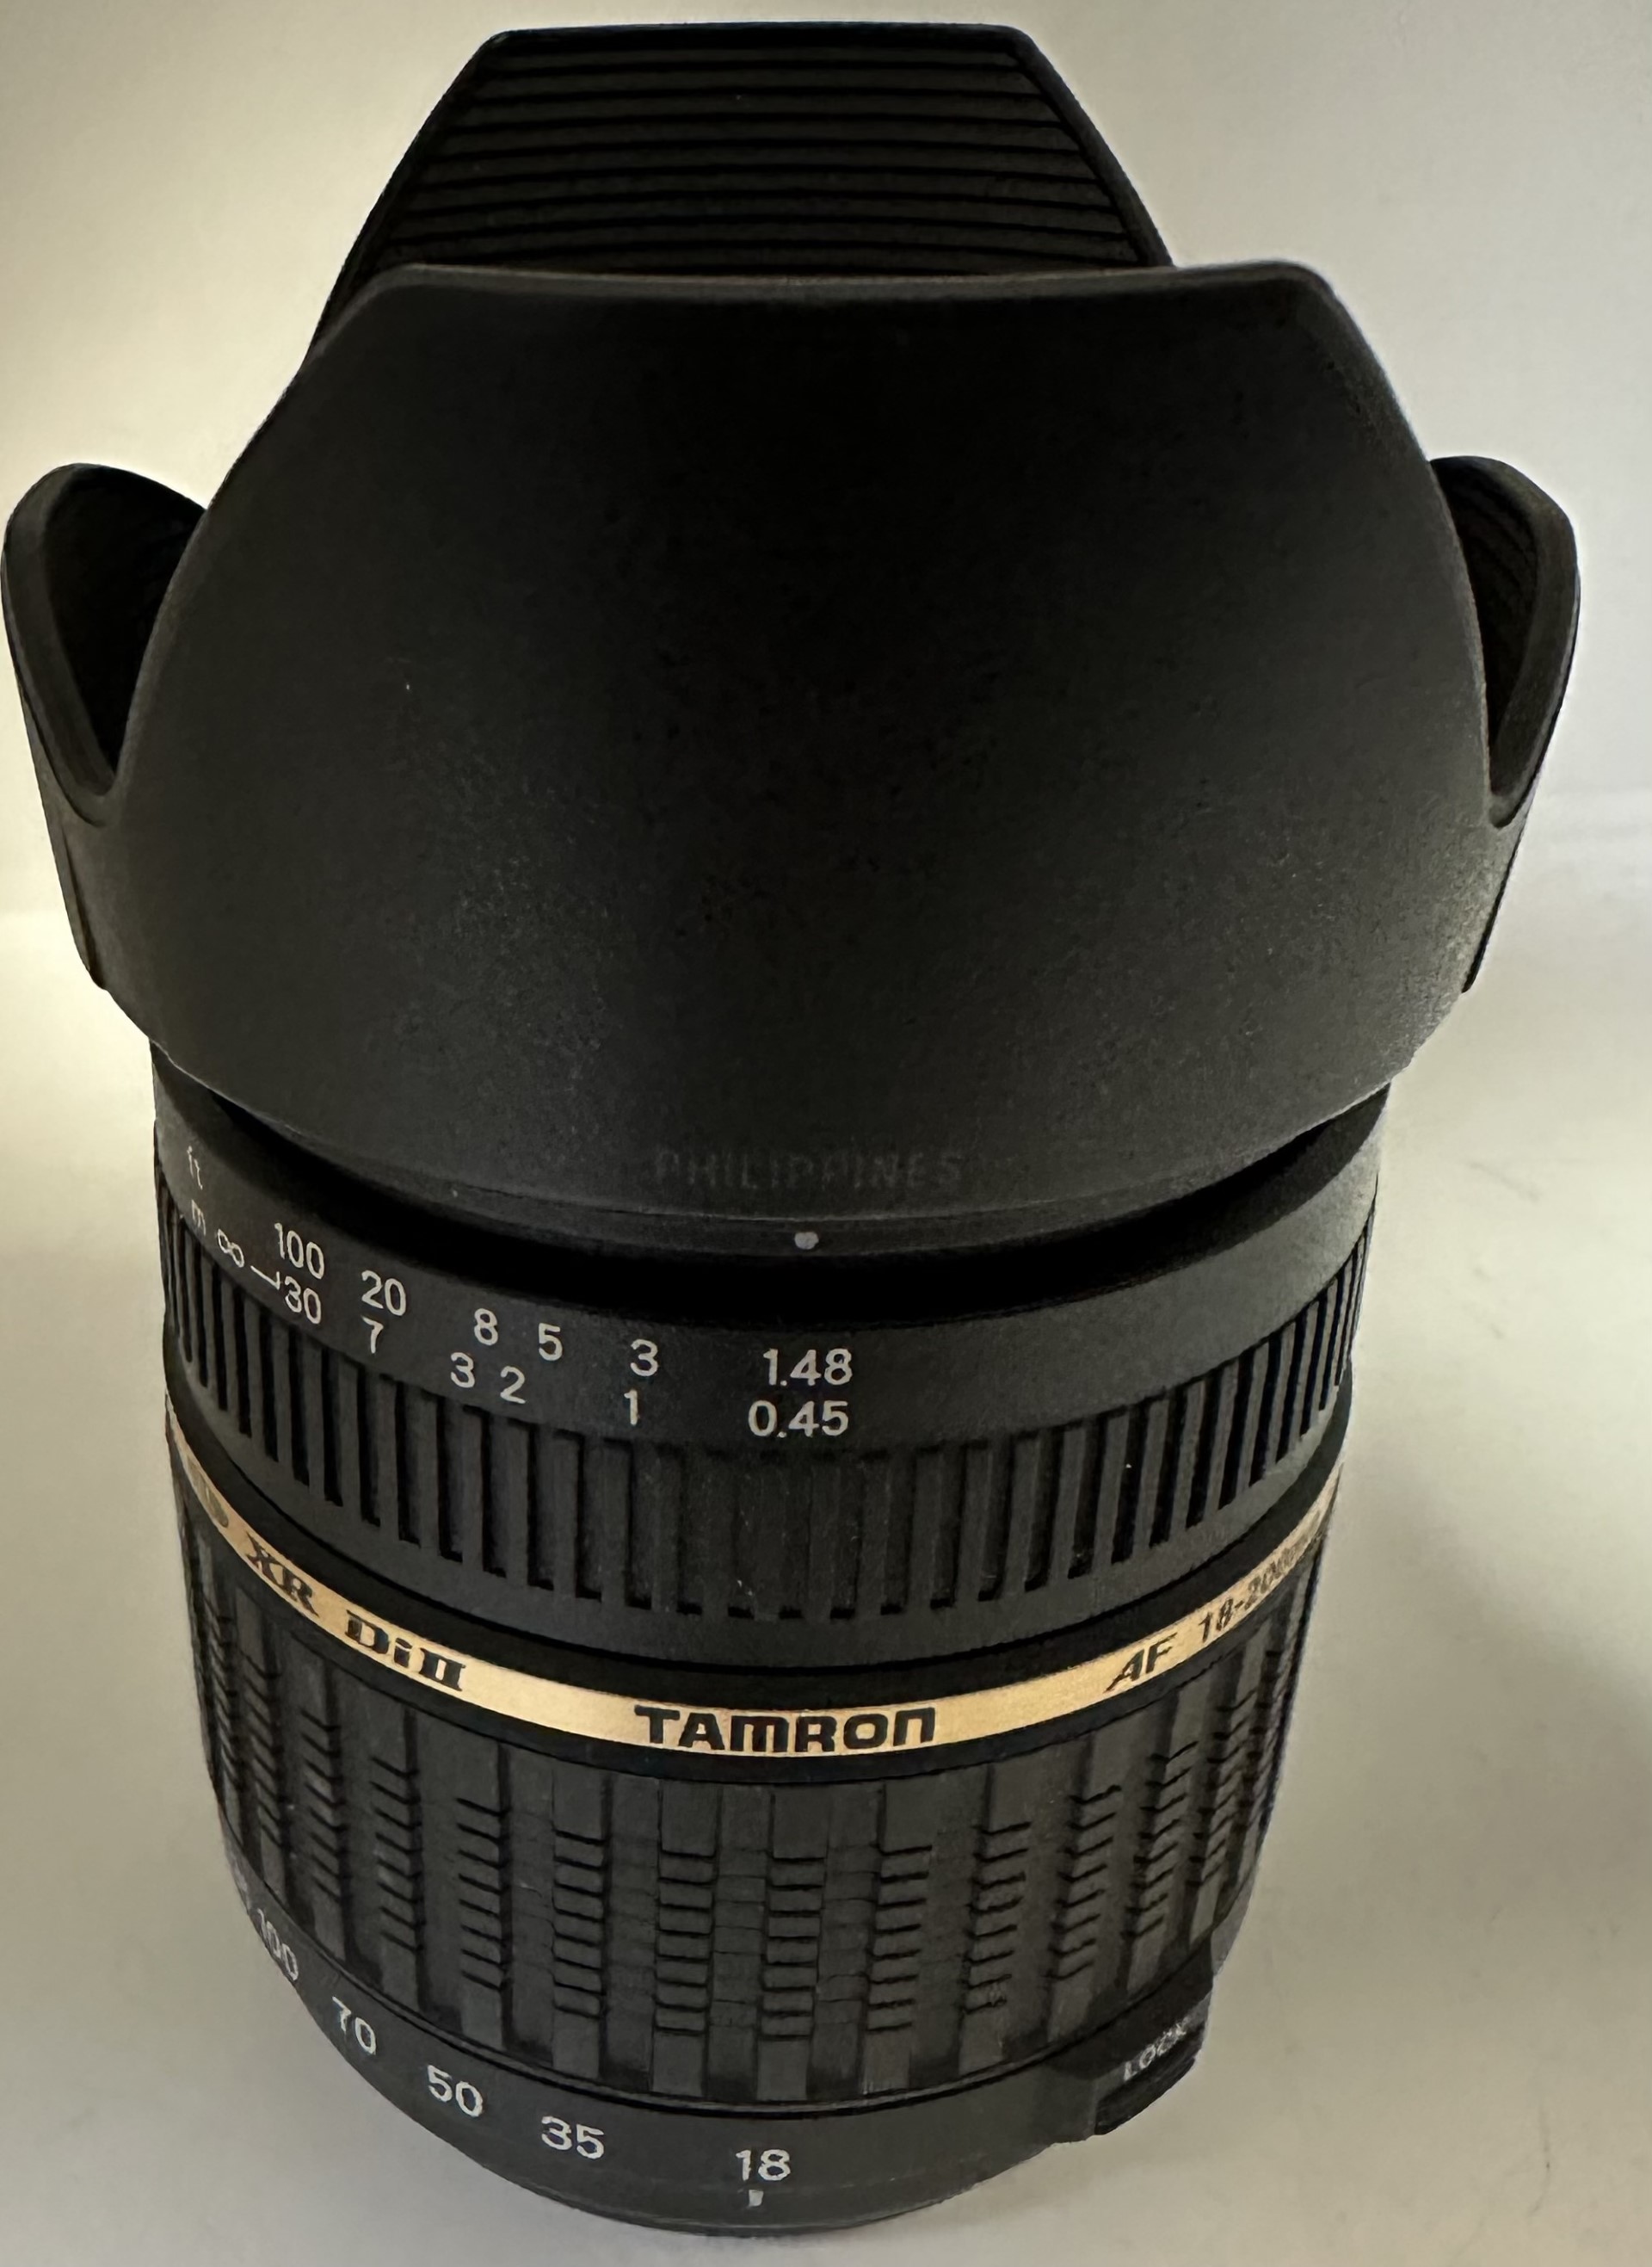 Tamron Aspherical 18-200mm Lens